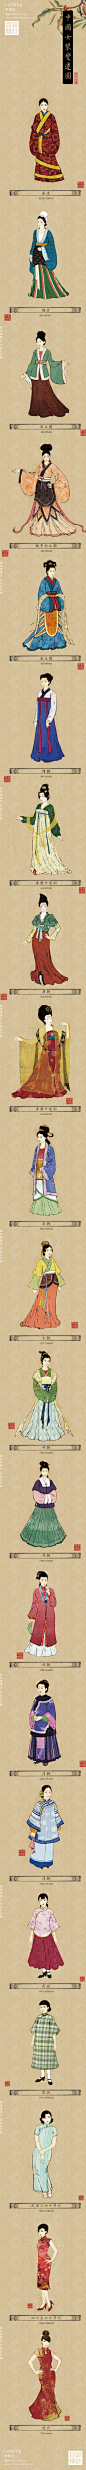 一起来看看中国女装的变迁史吧！@设计目录